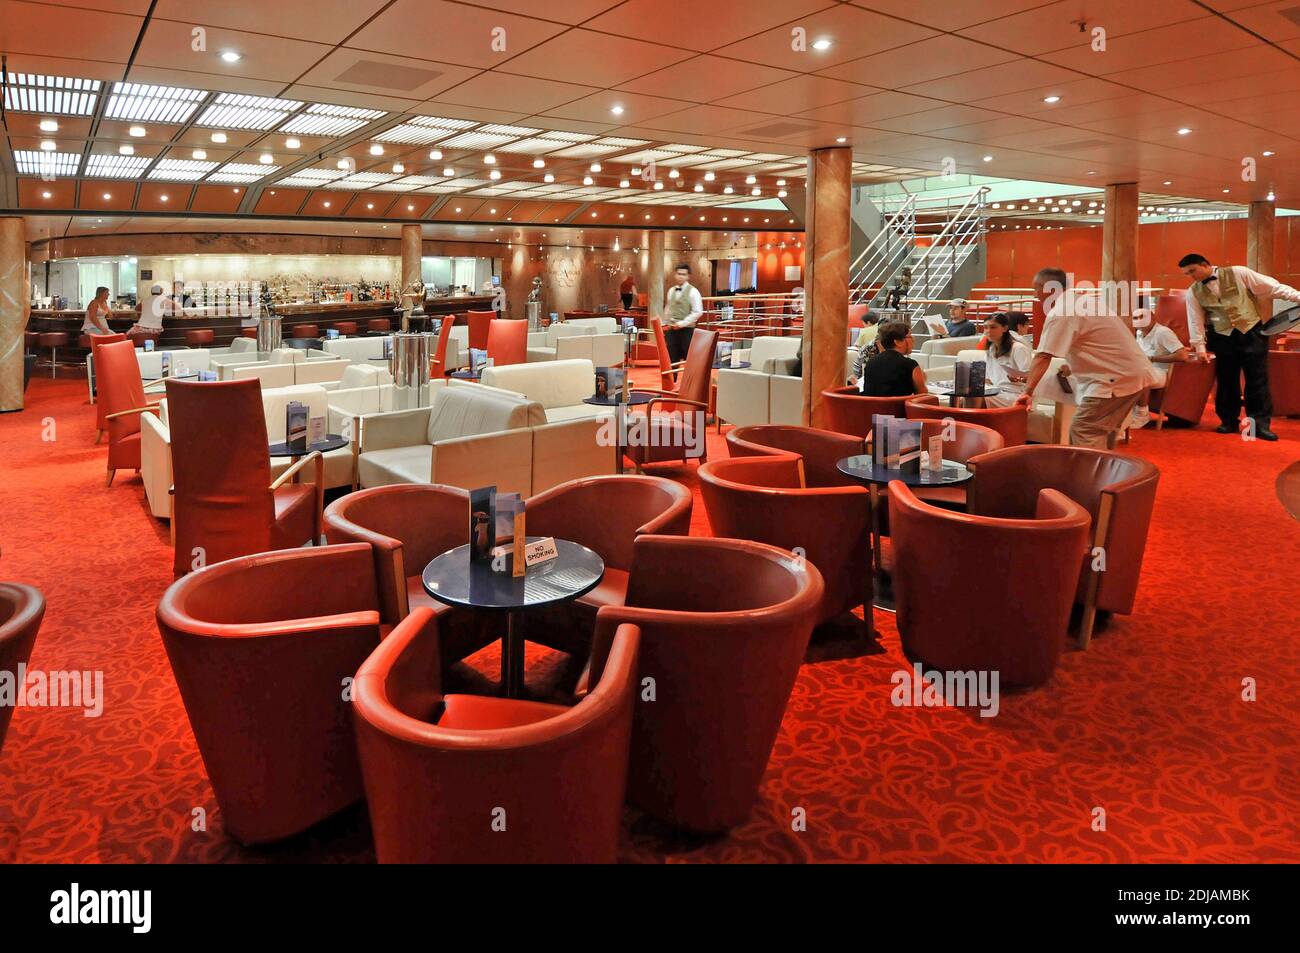 Mobilier rouge et blanc, chaises et tables, en soirée, à l'intérieur bar-salon, boissons, serveurs, passagers, croisière intérieure sur les paquebots de croisière Golfe persique Banque D'Images